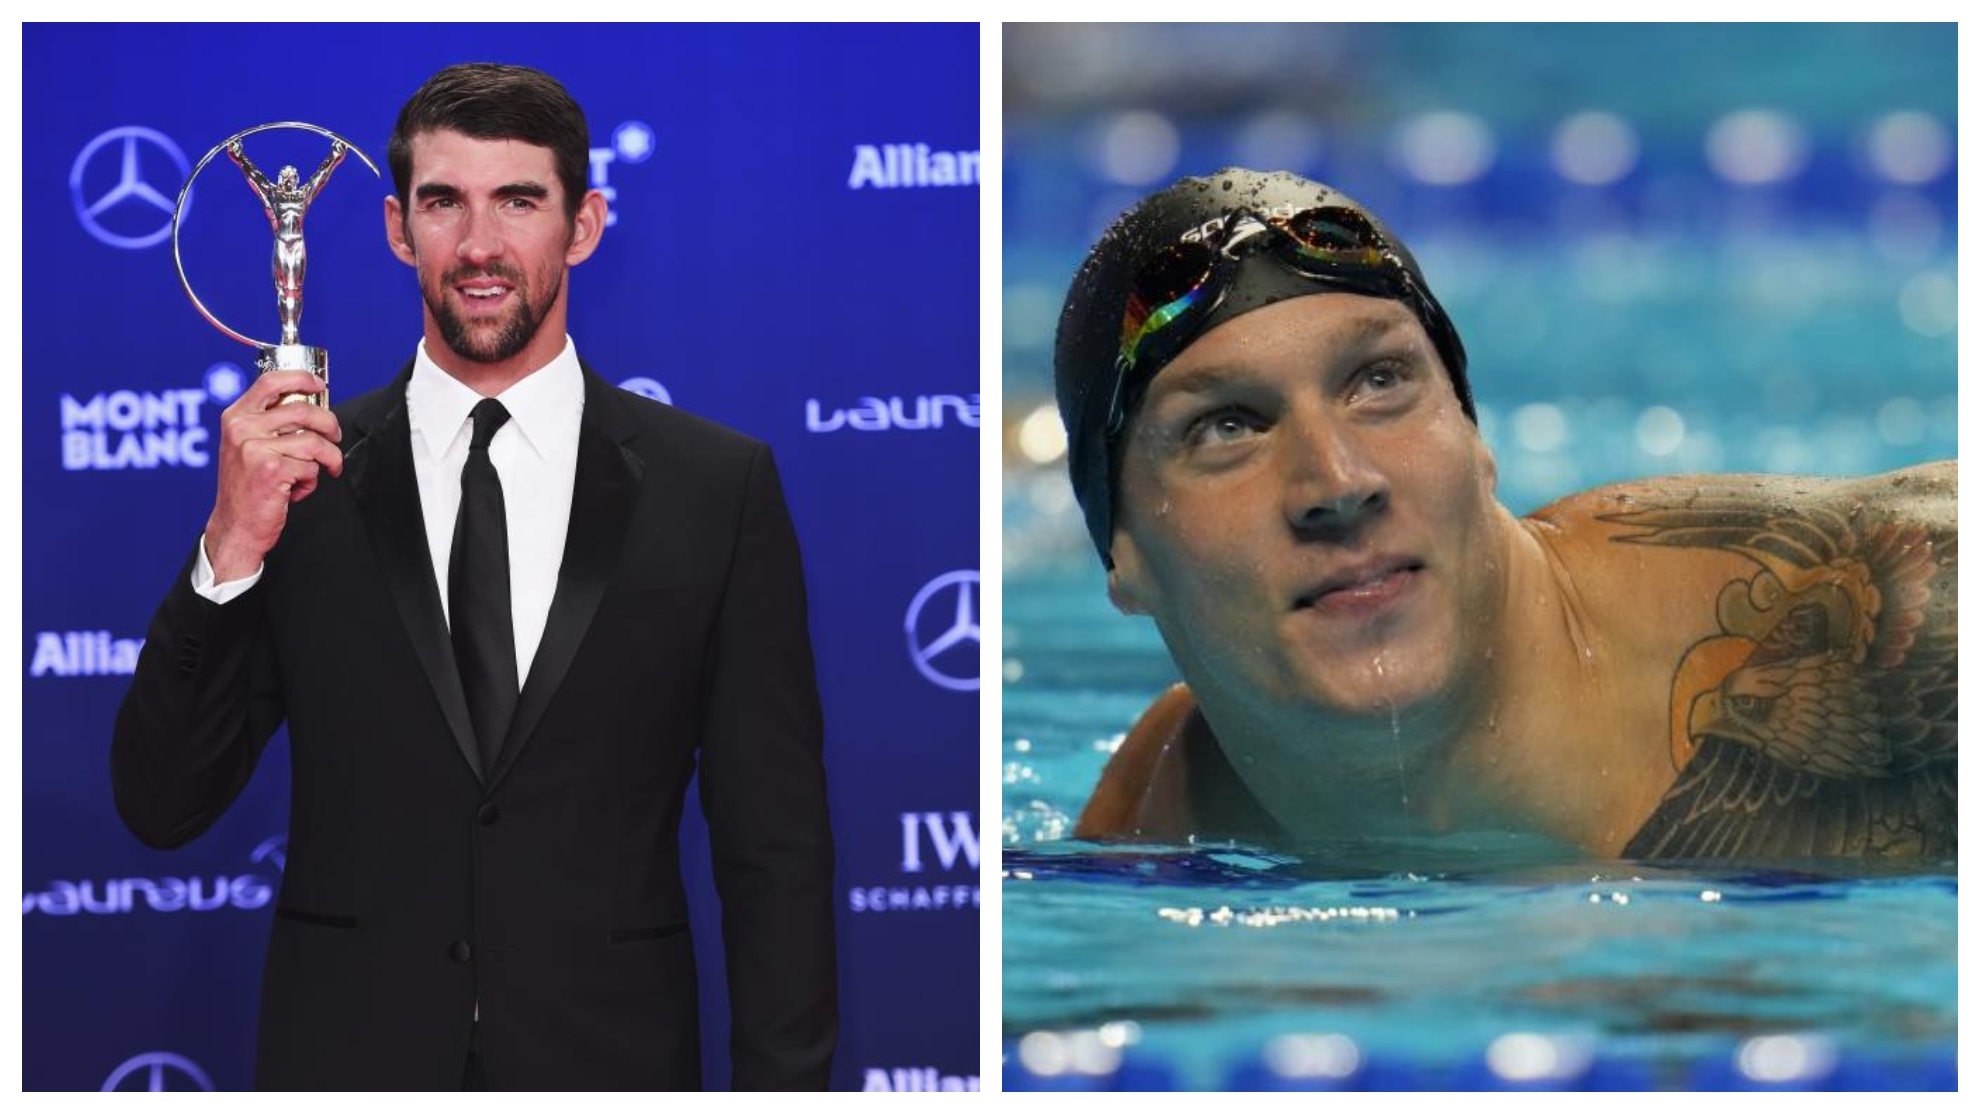 Michael Phelps con el Laureus, y Caeleb Dressel en los Trials de EE.UU.